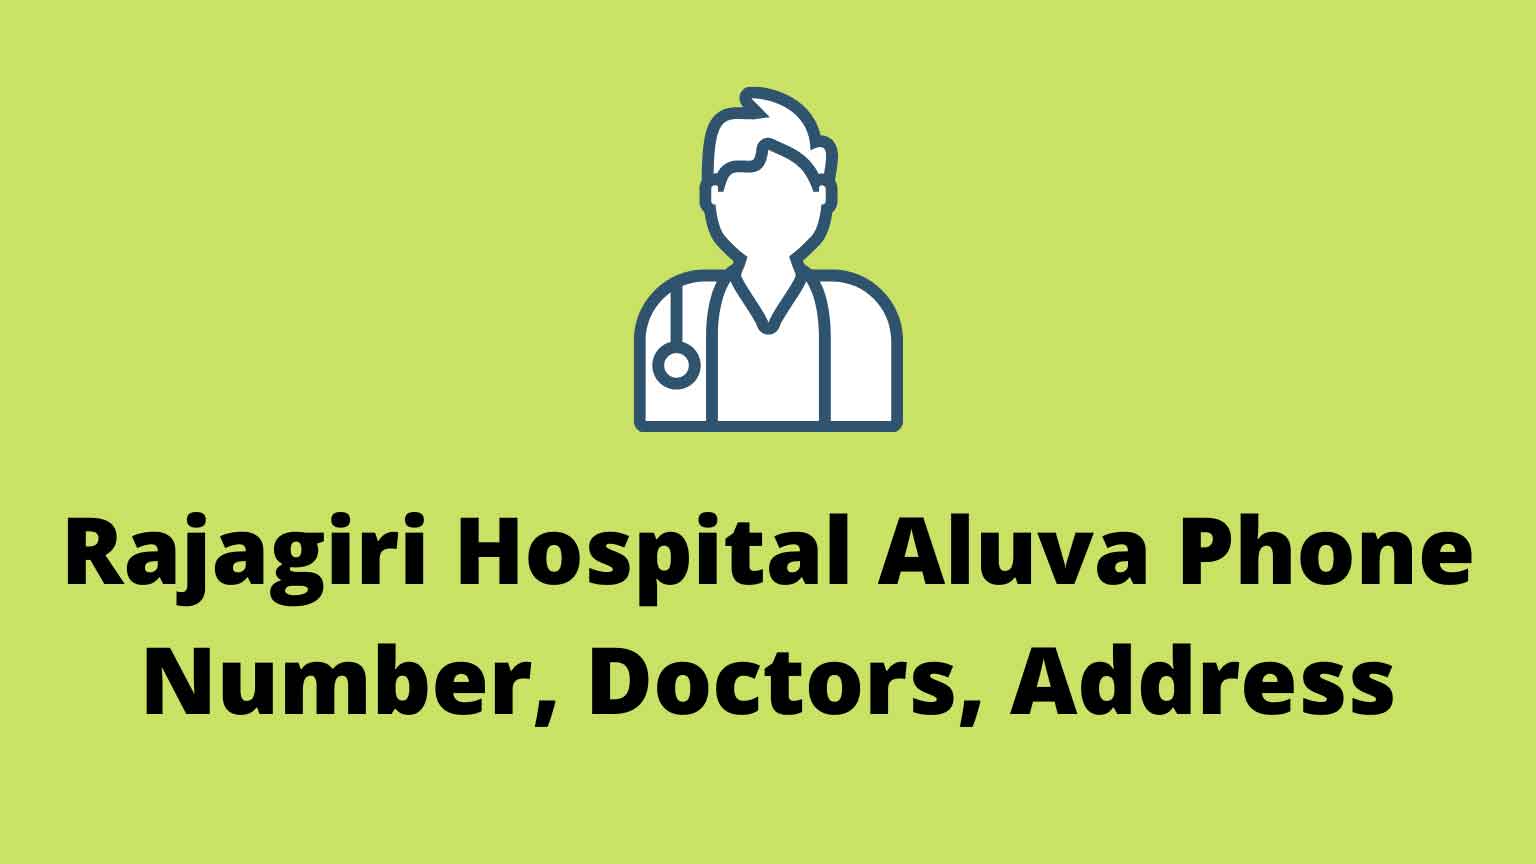 Rajagiri Hospital Aluva Phone Number, Doctors, Address